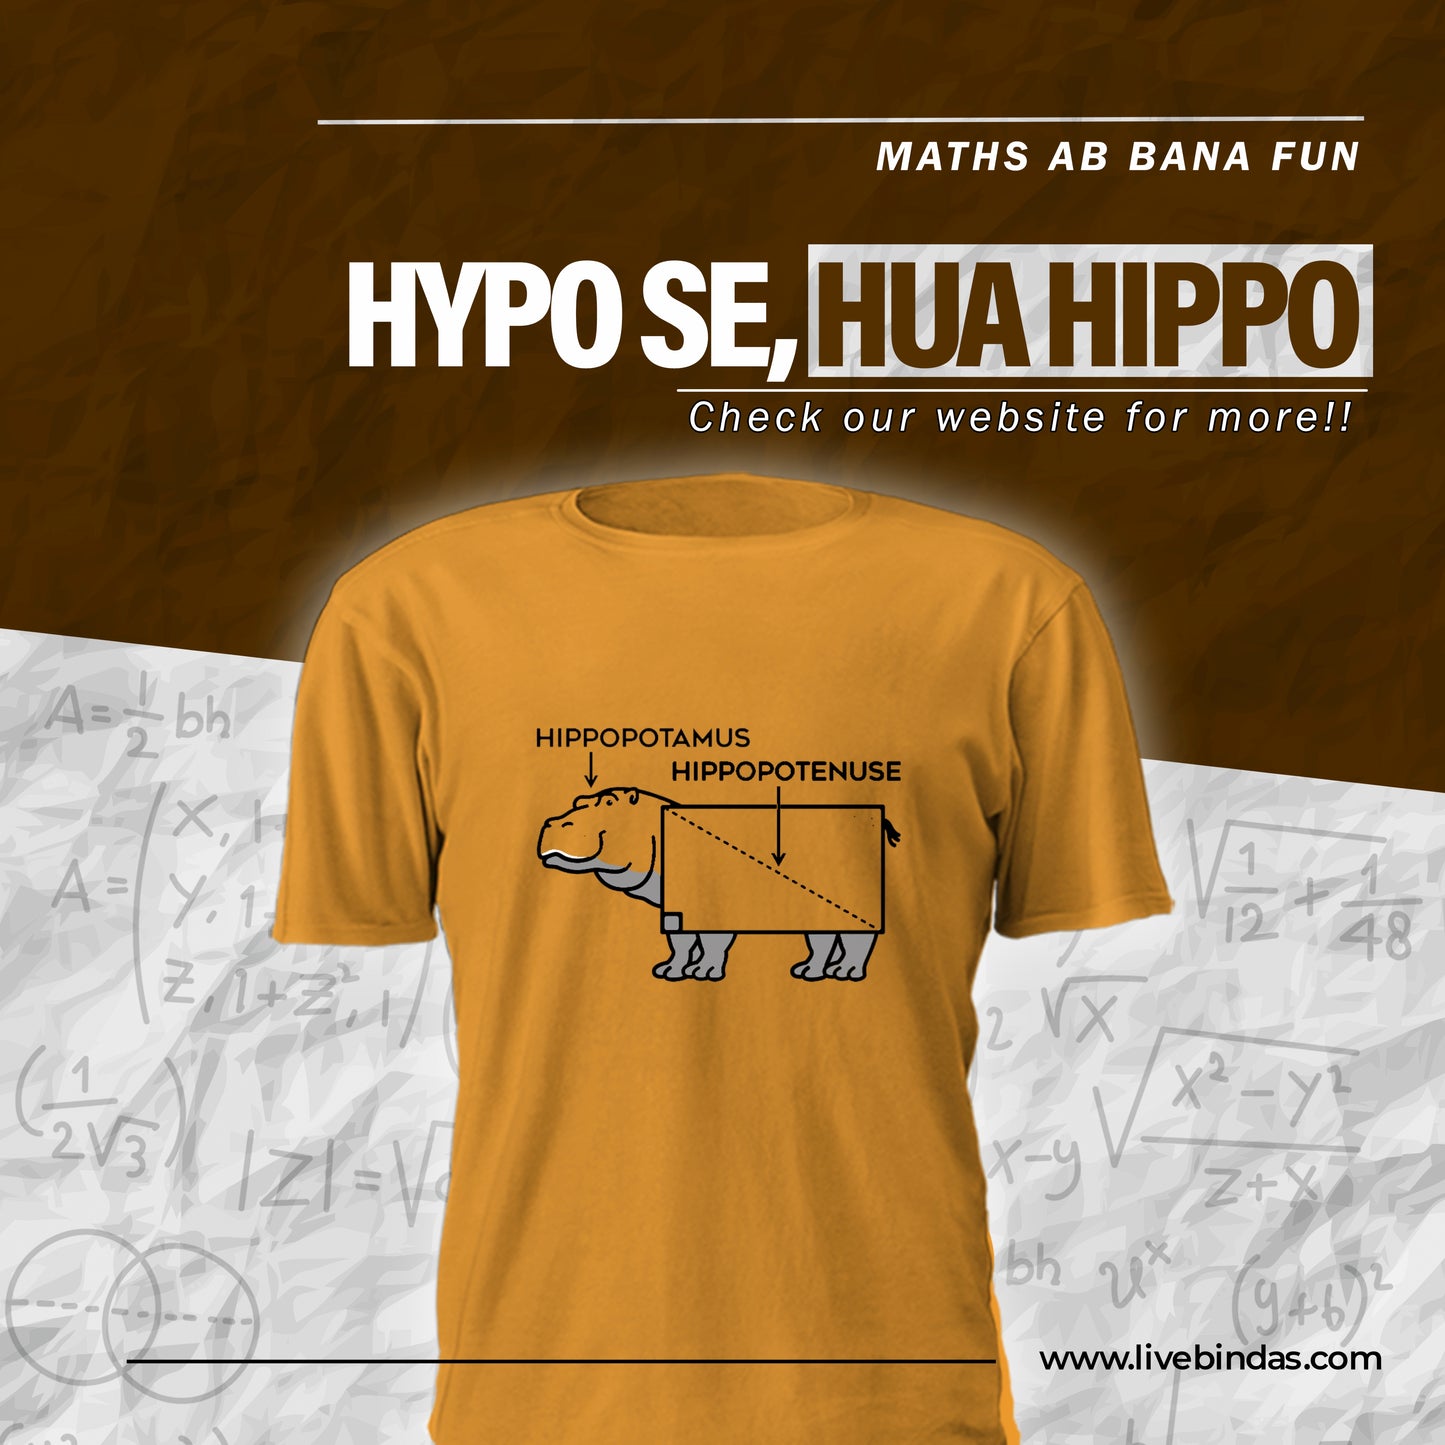 Hippopotamus-Hippopotenuse (M) - Mustard Yellow